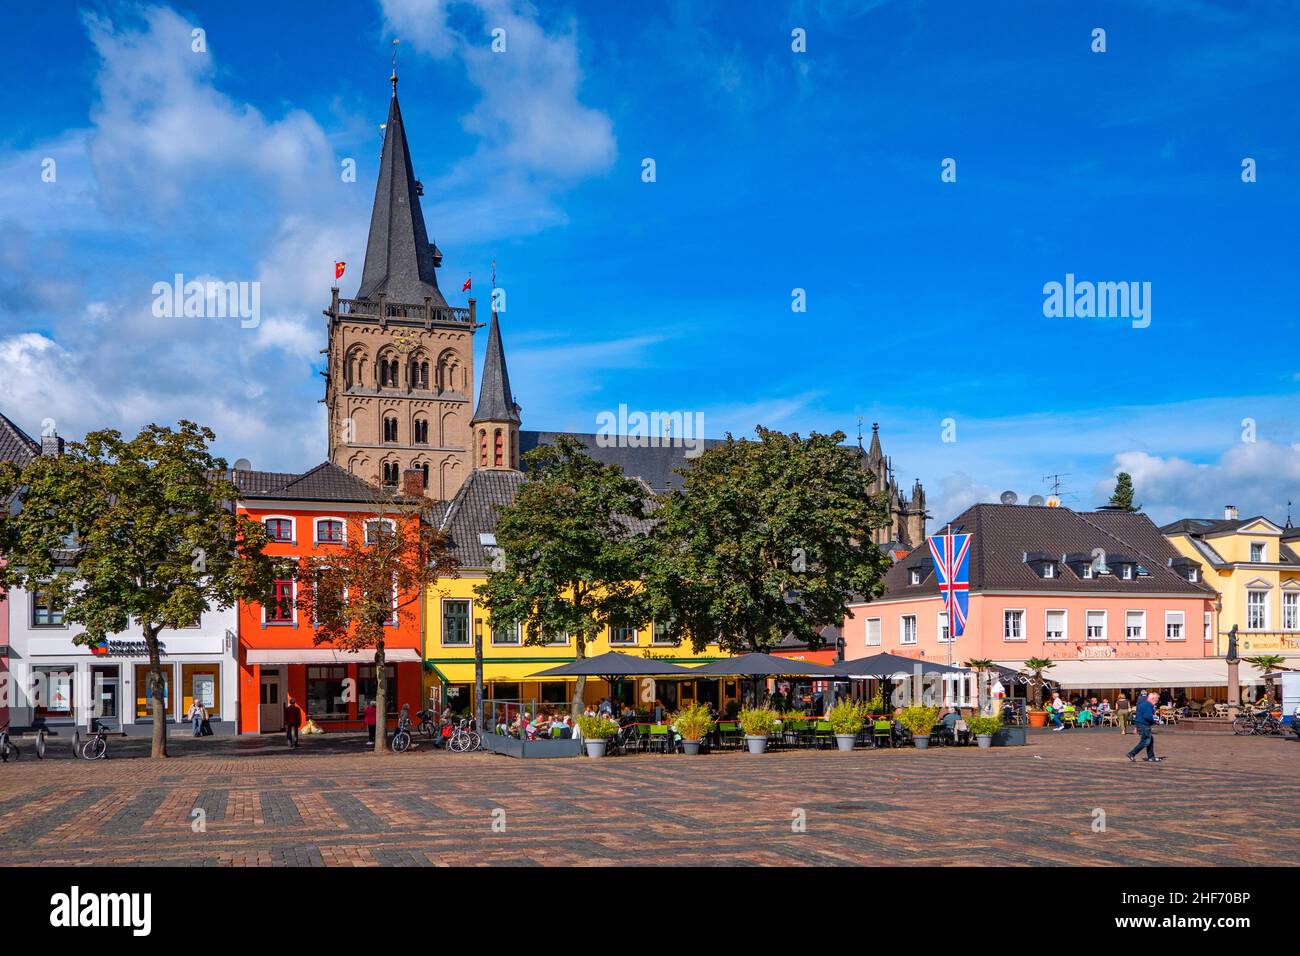 Place du marché et cathédrale de Xanten, Xanten, Basse-Rhin, Rhénanie-du-Nord-Westphalie, Allemagne Banque D'Images